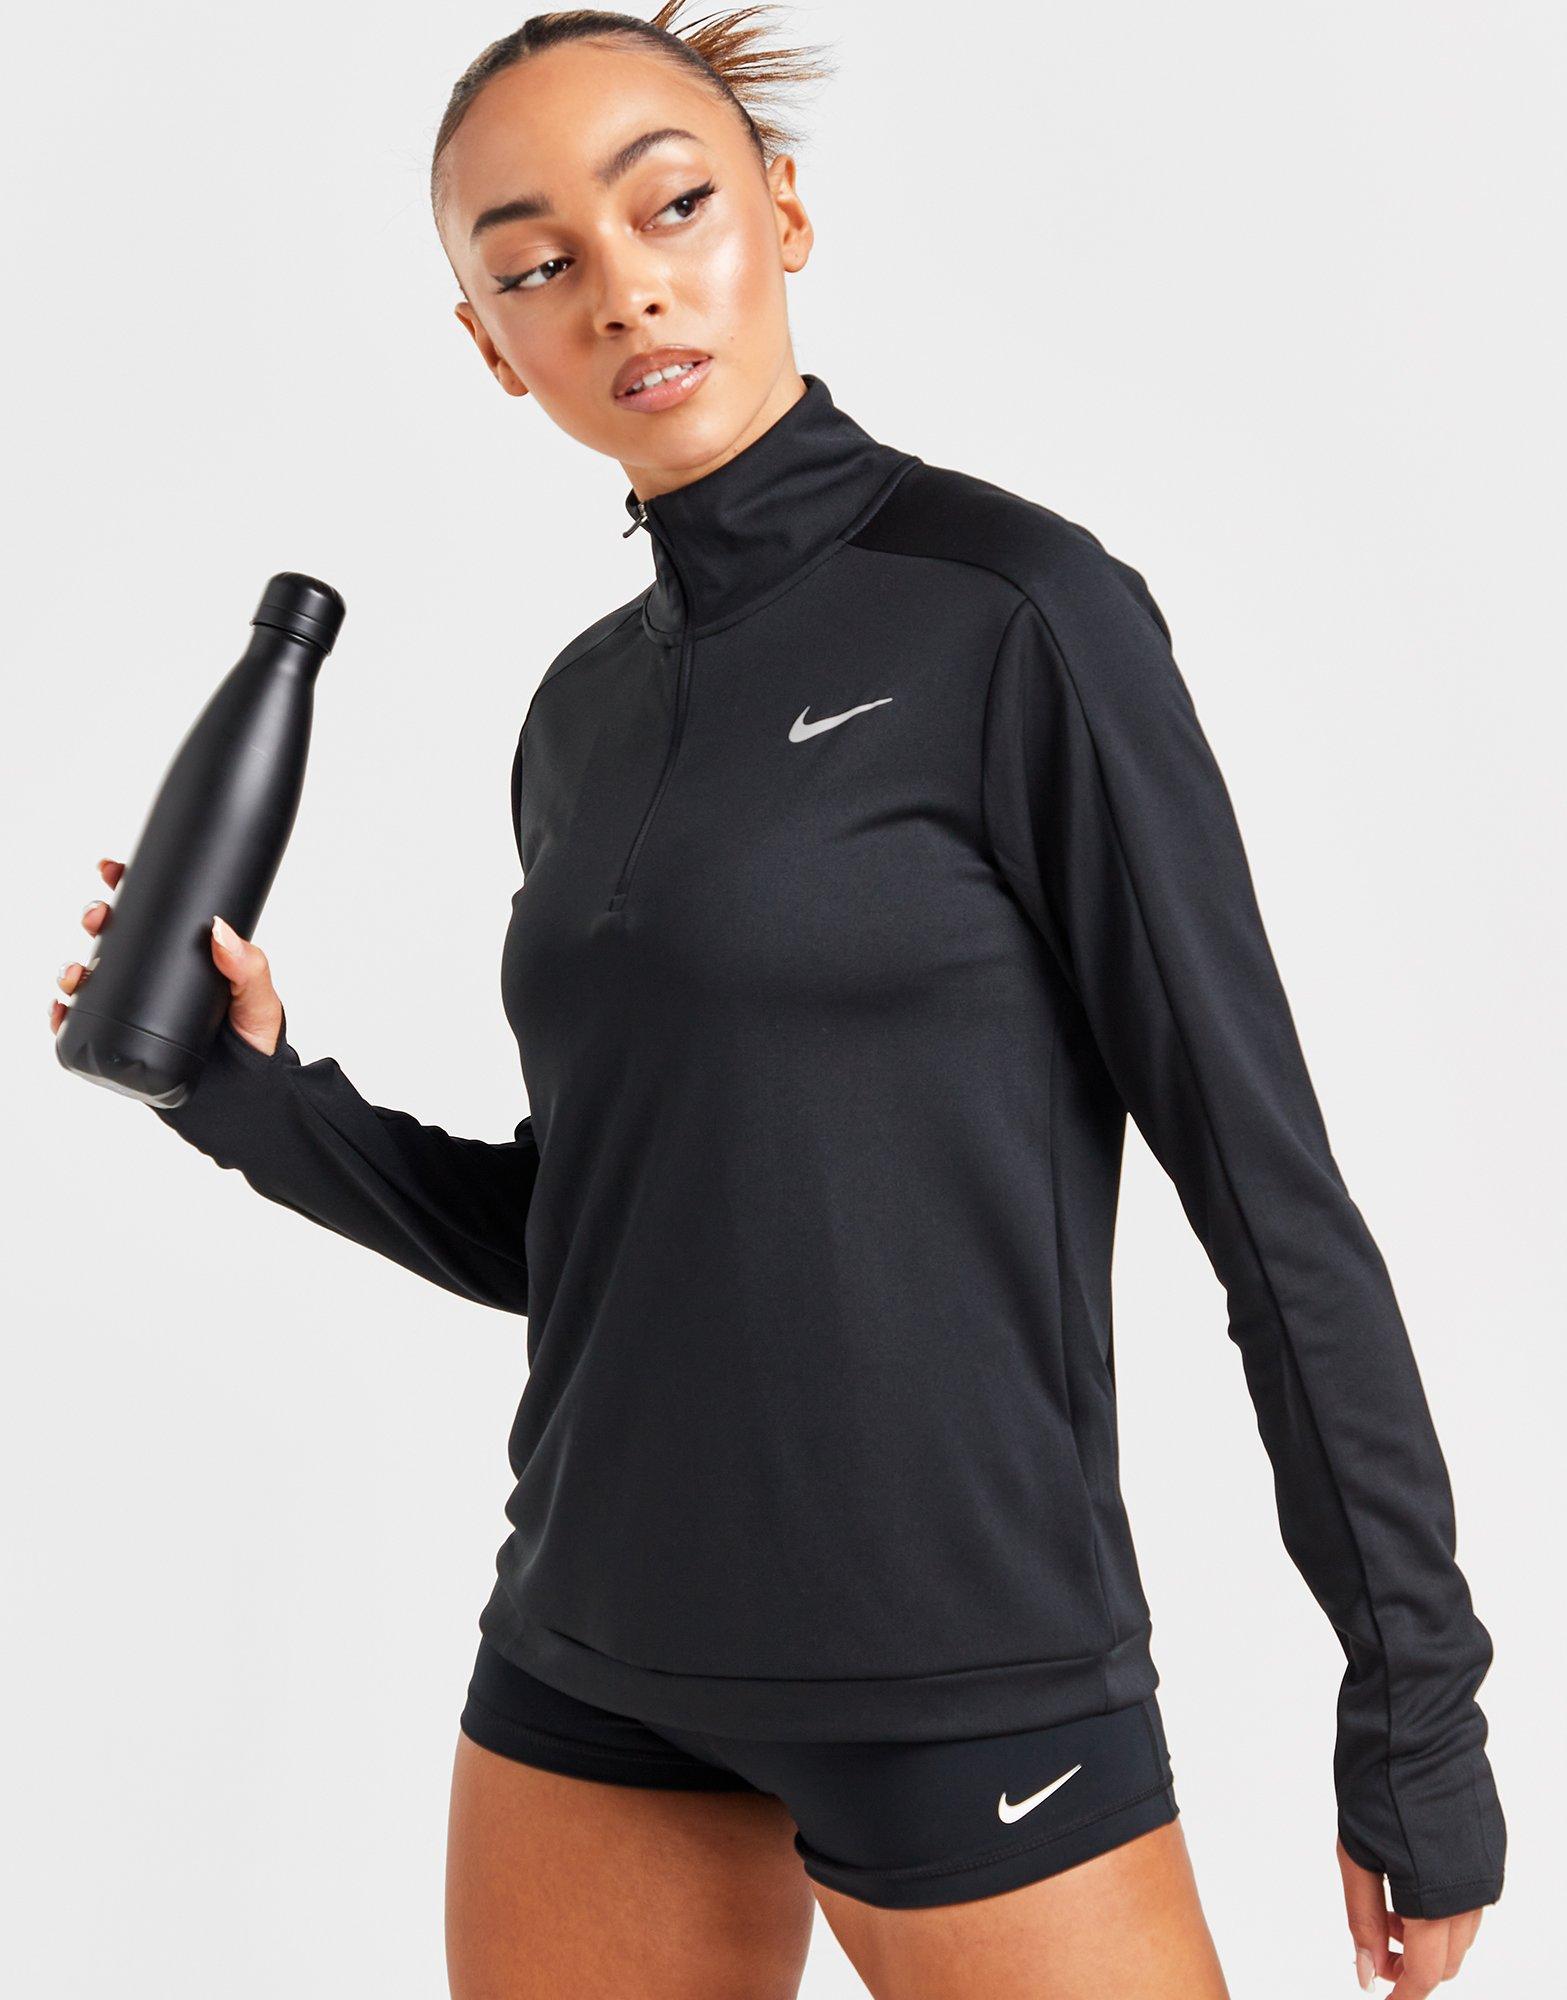 Women's Training & Gym Clothing Long Sleeve Shirts. Nike PT